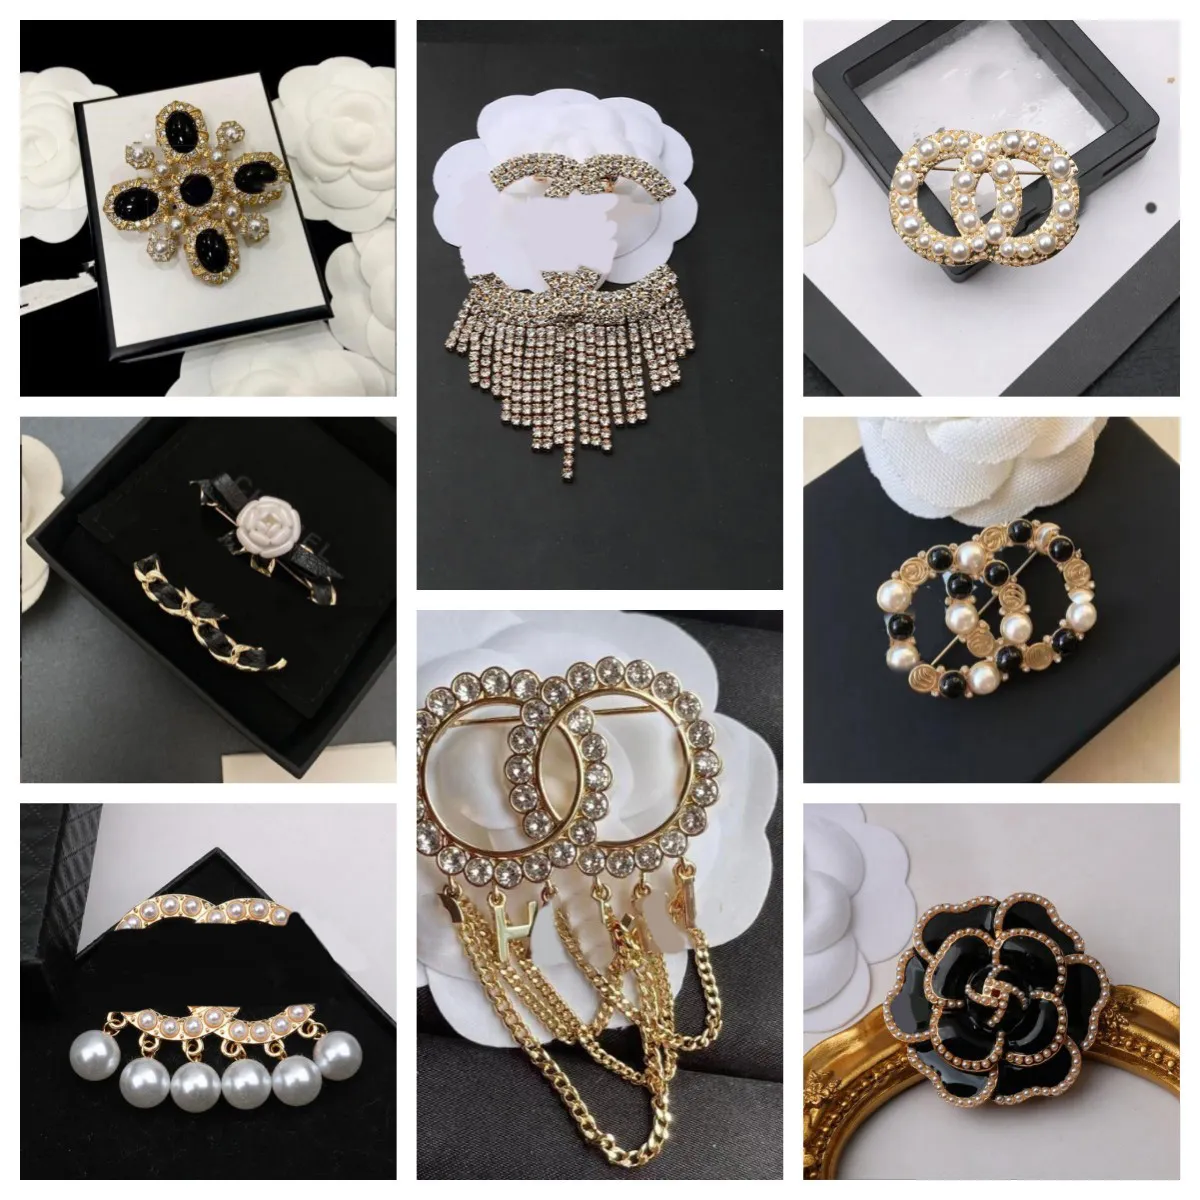 Date de luxe marque Desinger broche femmes cristal strass perle lettre broches costume broche cadeaux de mode bijoux accessoires de haute qualité 20style